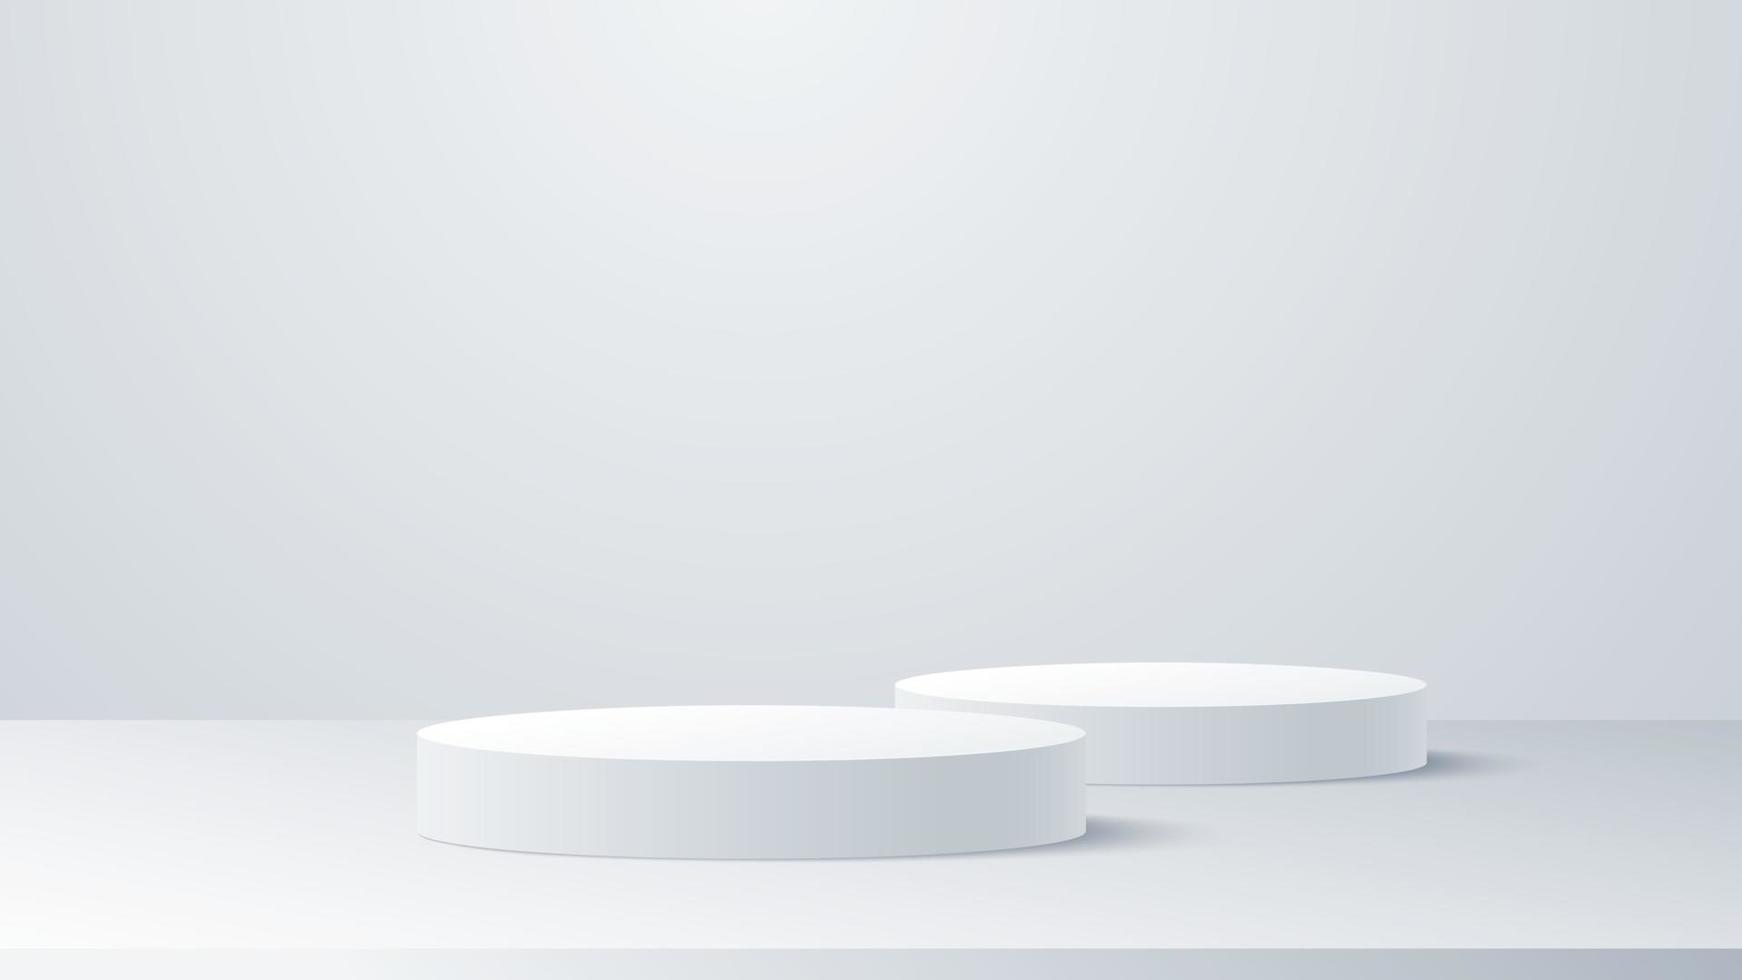 vit-grå podium piedestal produkt visa abstrakt vektor bakgrund.